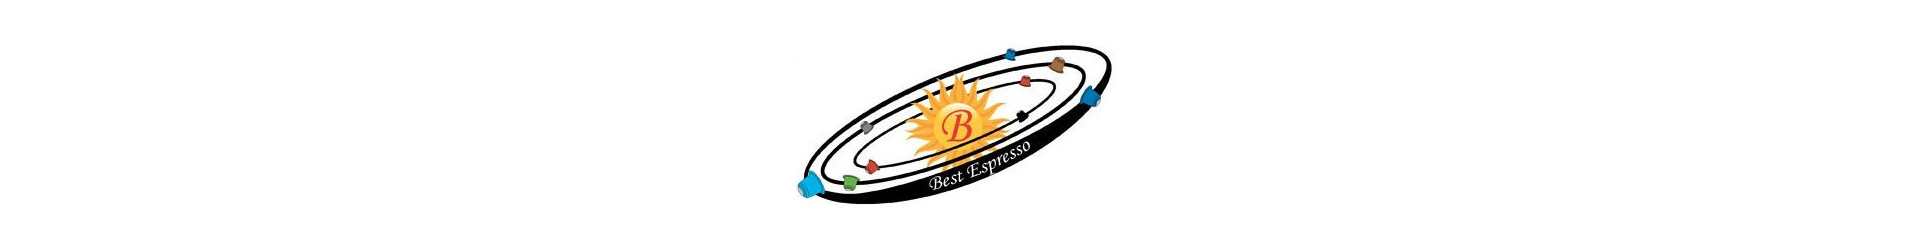 Best Espresso